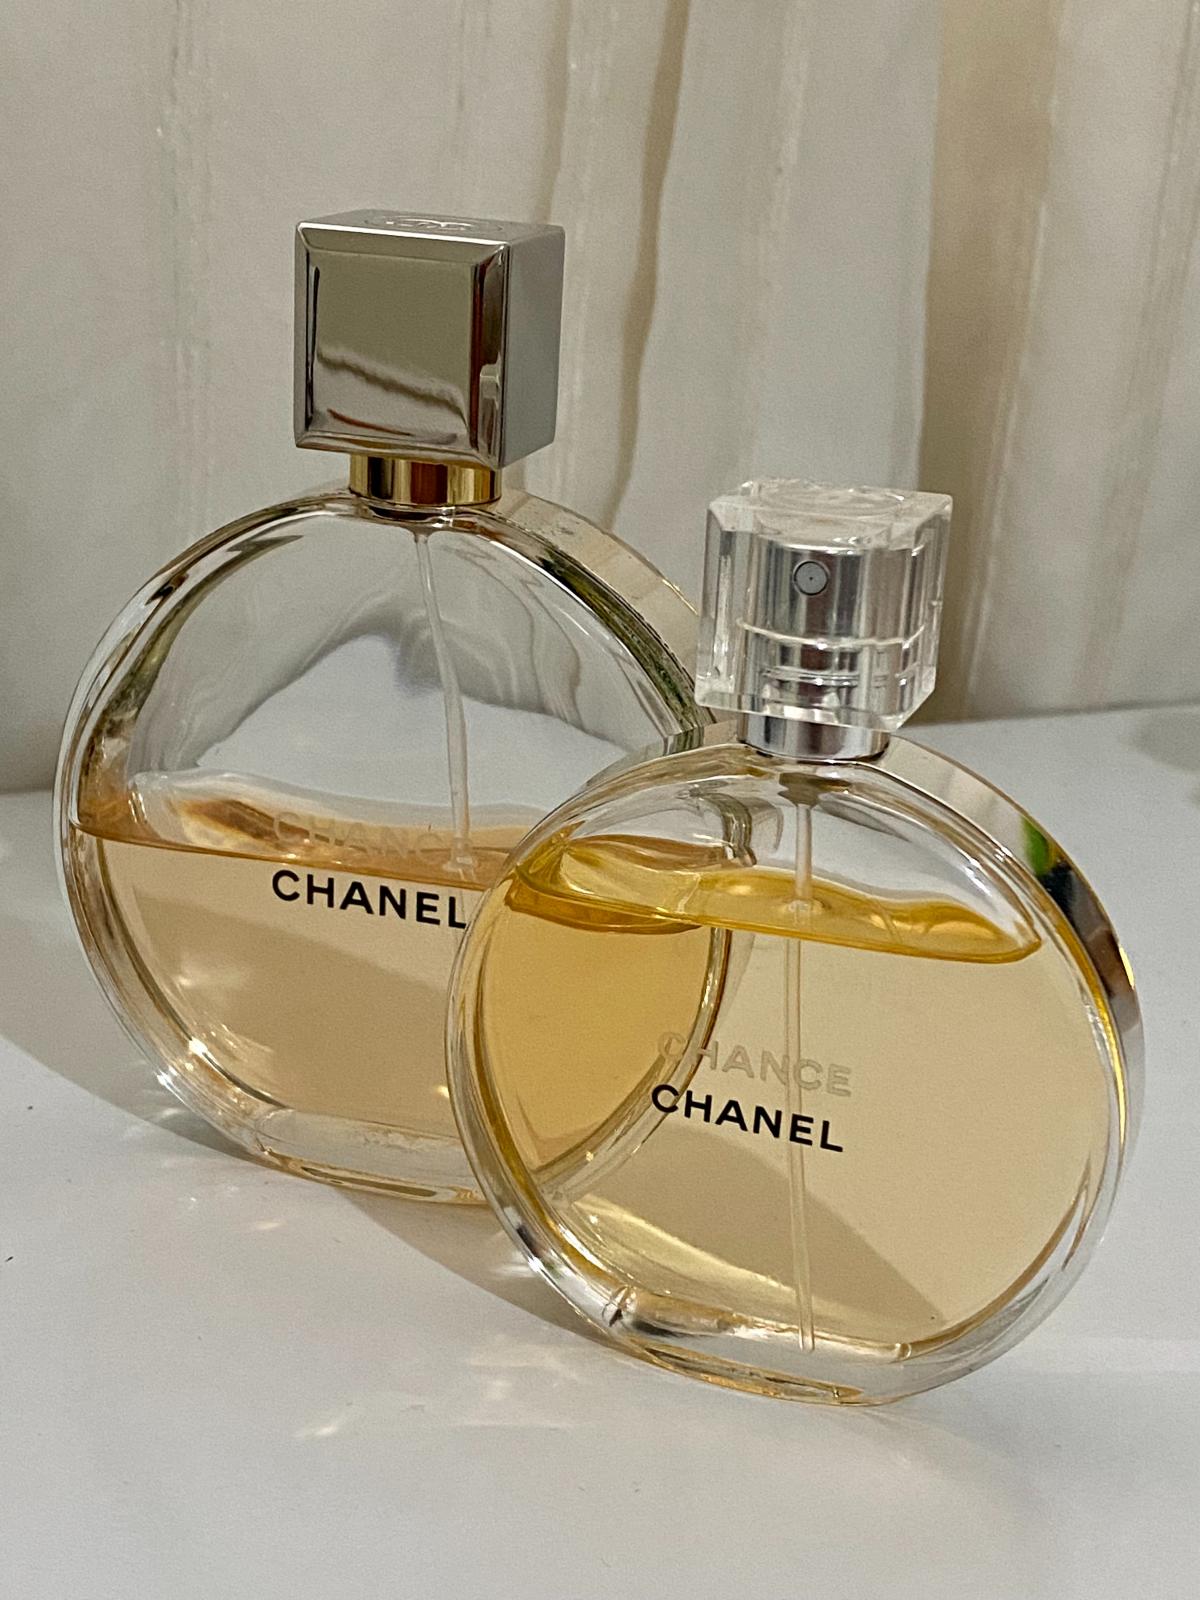 Chance Eau de Parfum Chanel parfum - un parfum pour femme 2005